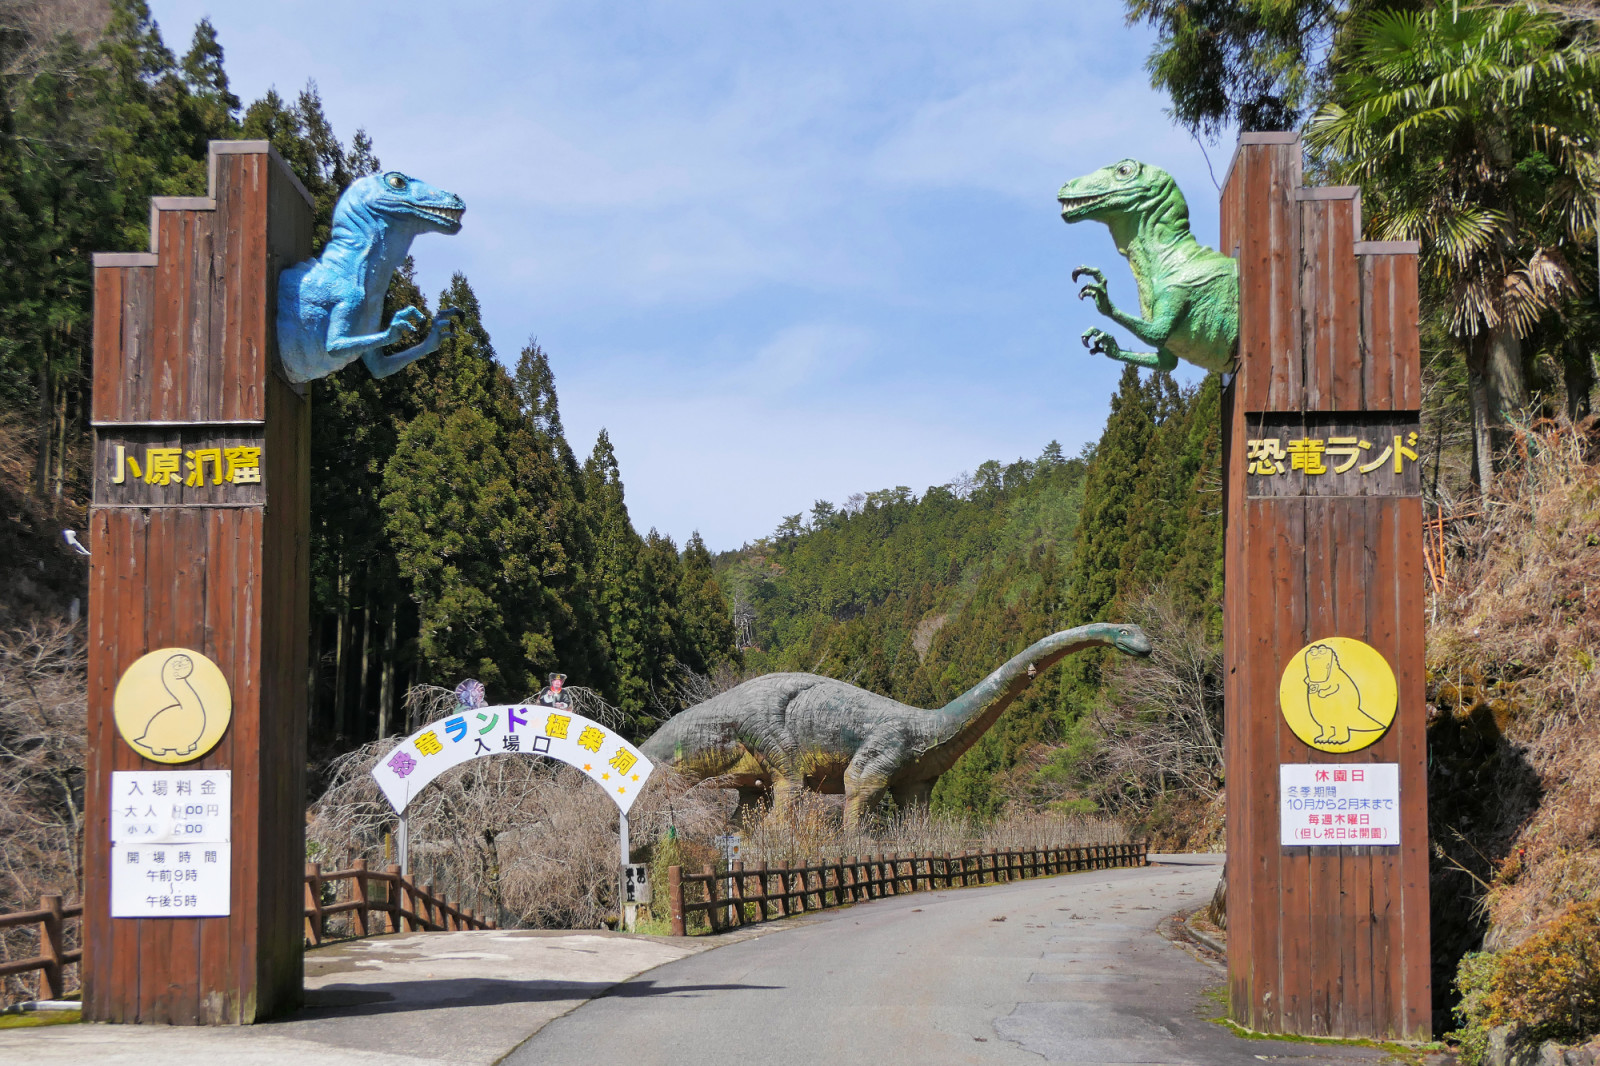 わかやま観光 小原洞窟恐竜ランド 和歌山県公式観光サイト